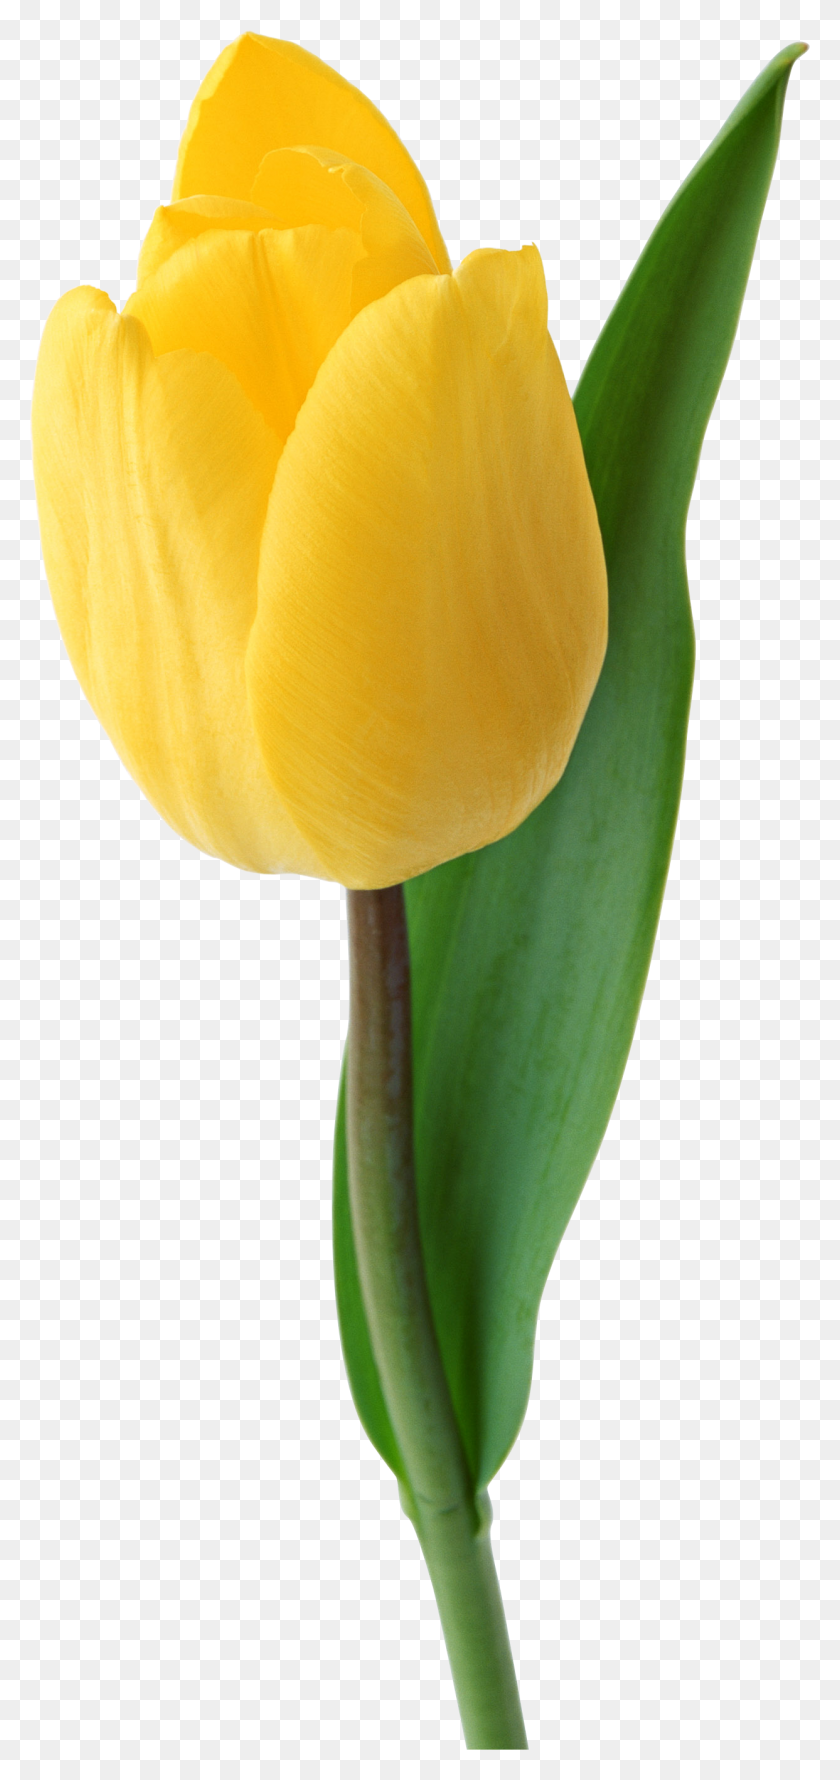 1243x2742 Tulip Clipart Yellow Tulip - Tulip Images Clip Art